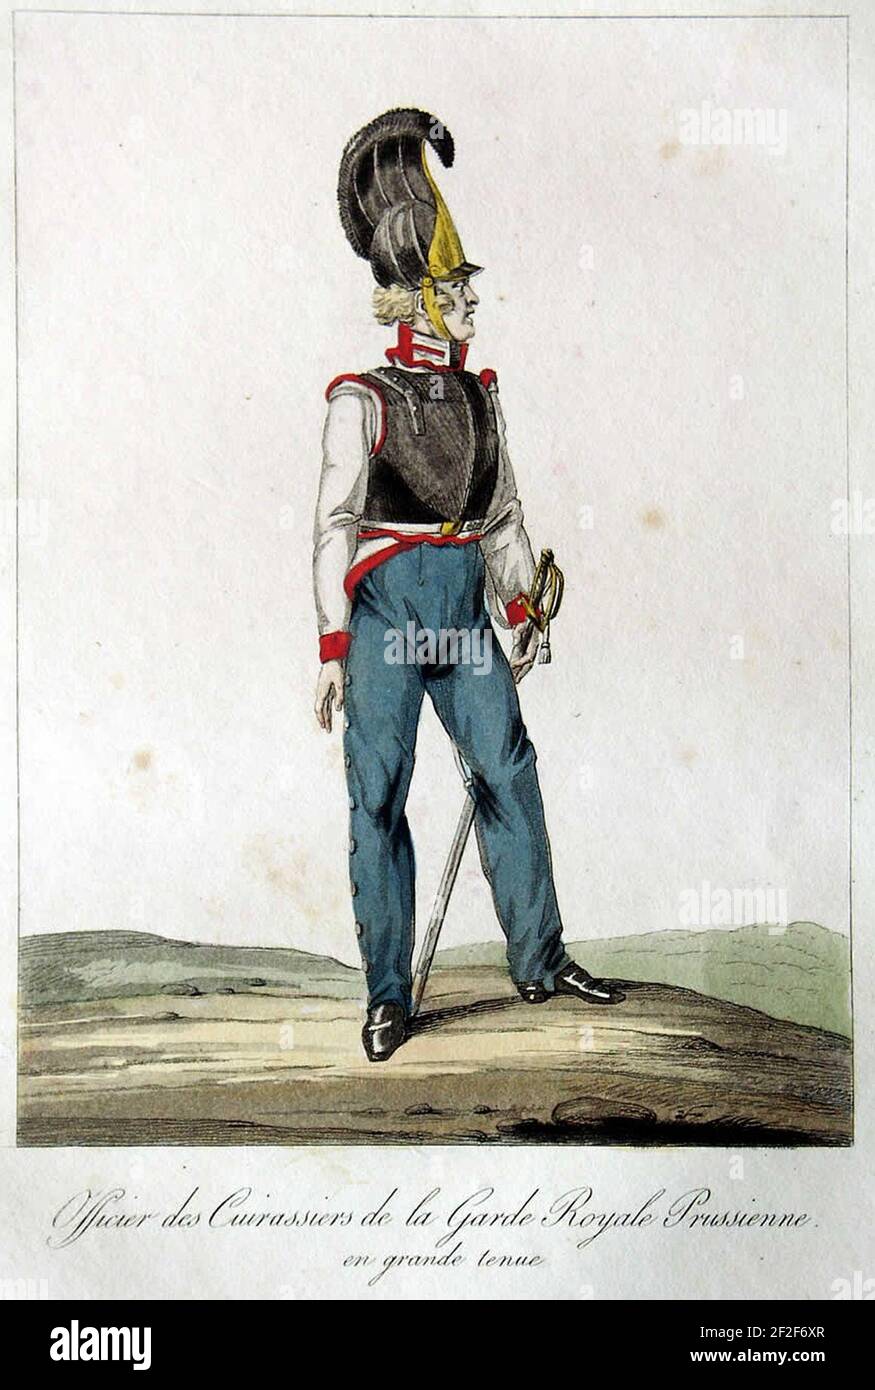 Preußische Gardekürassiere 1815 gr Uniform. Stock Photo